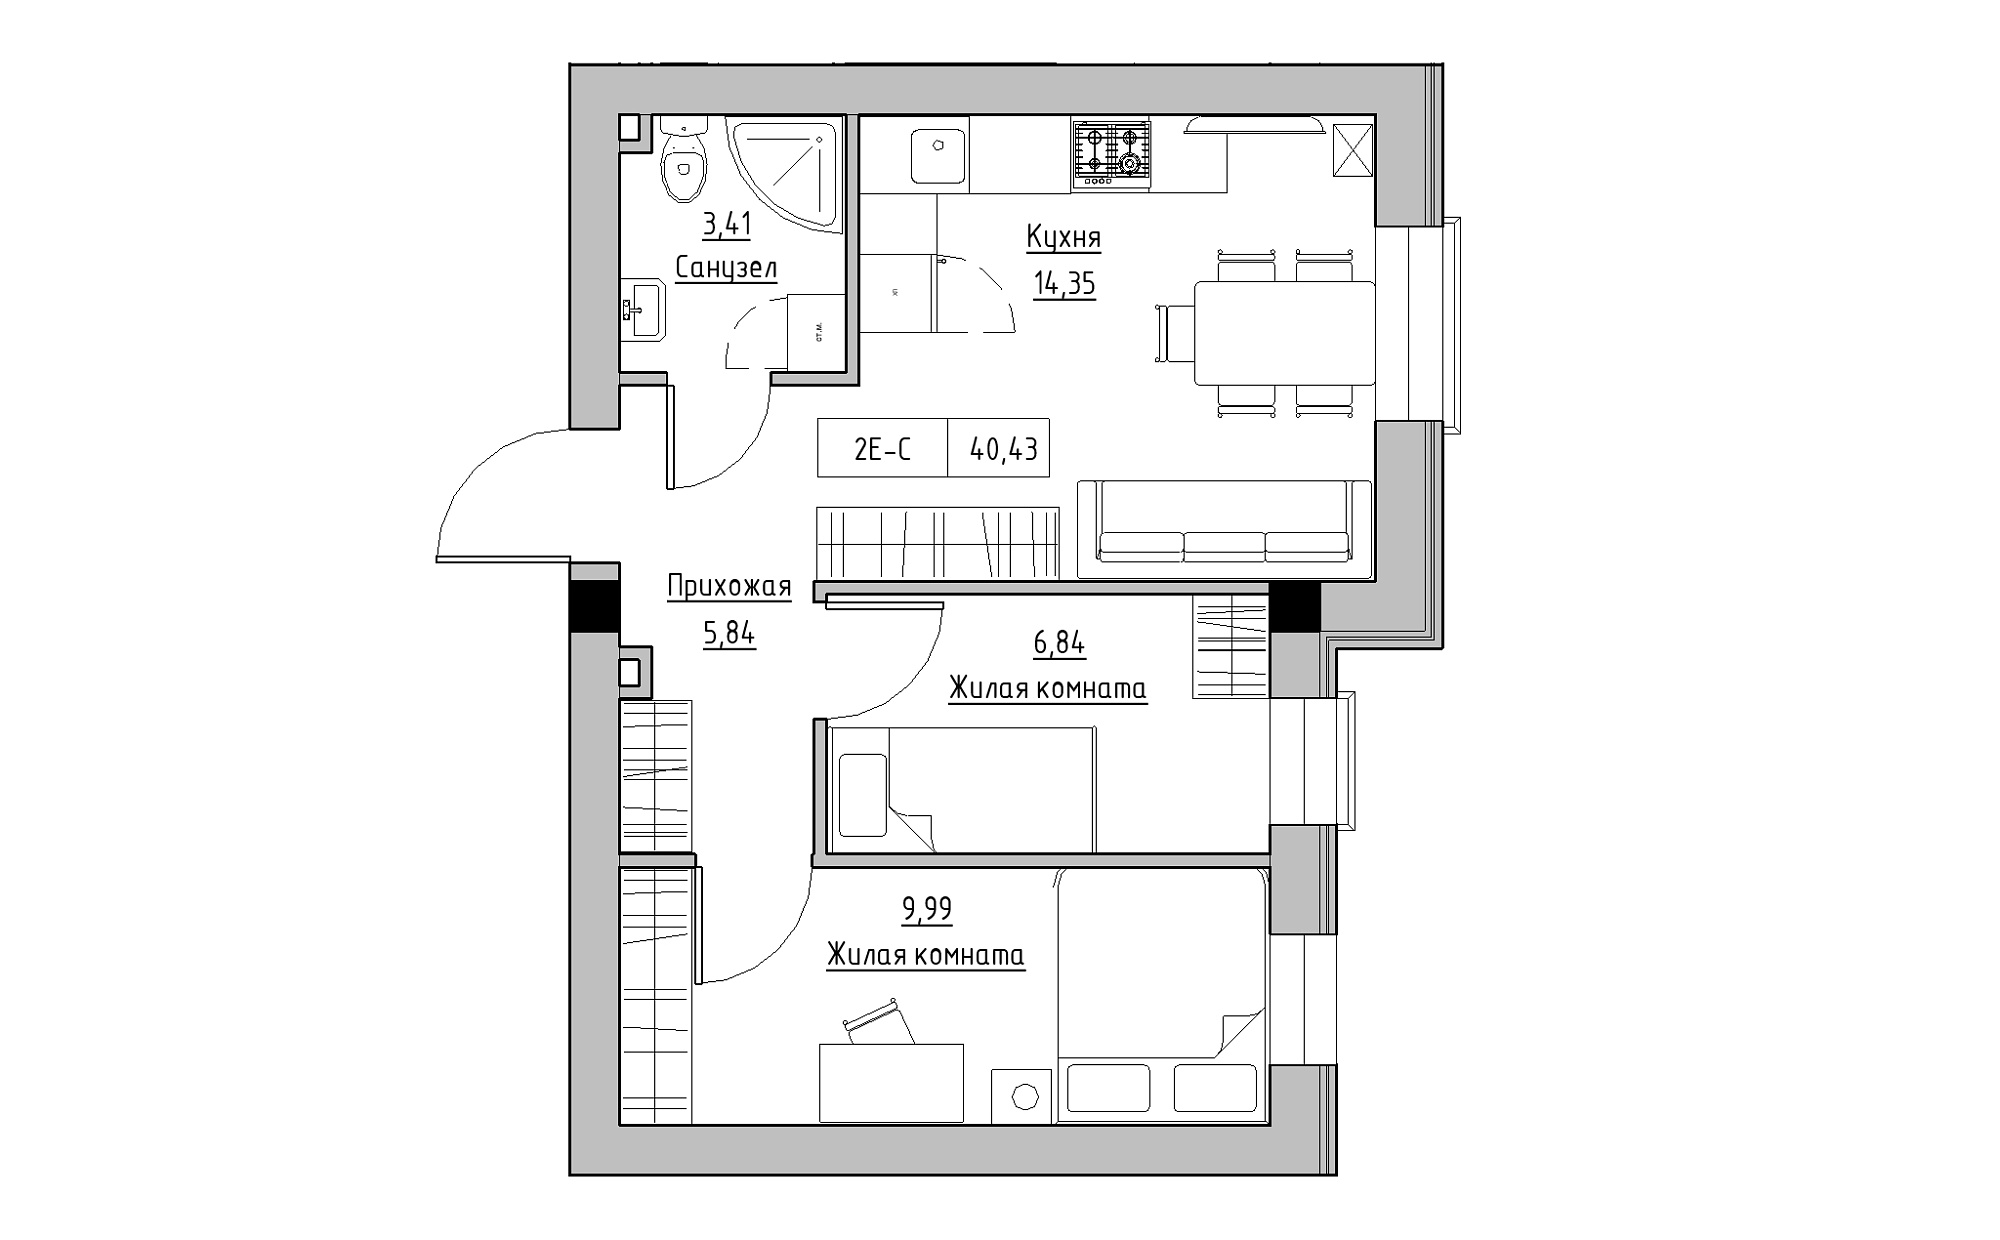 Планування 2-к квартира площею 40.43м2, KS-022-01/0010.